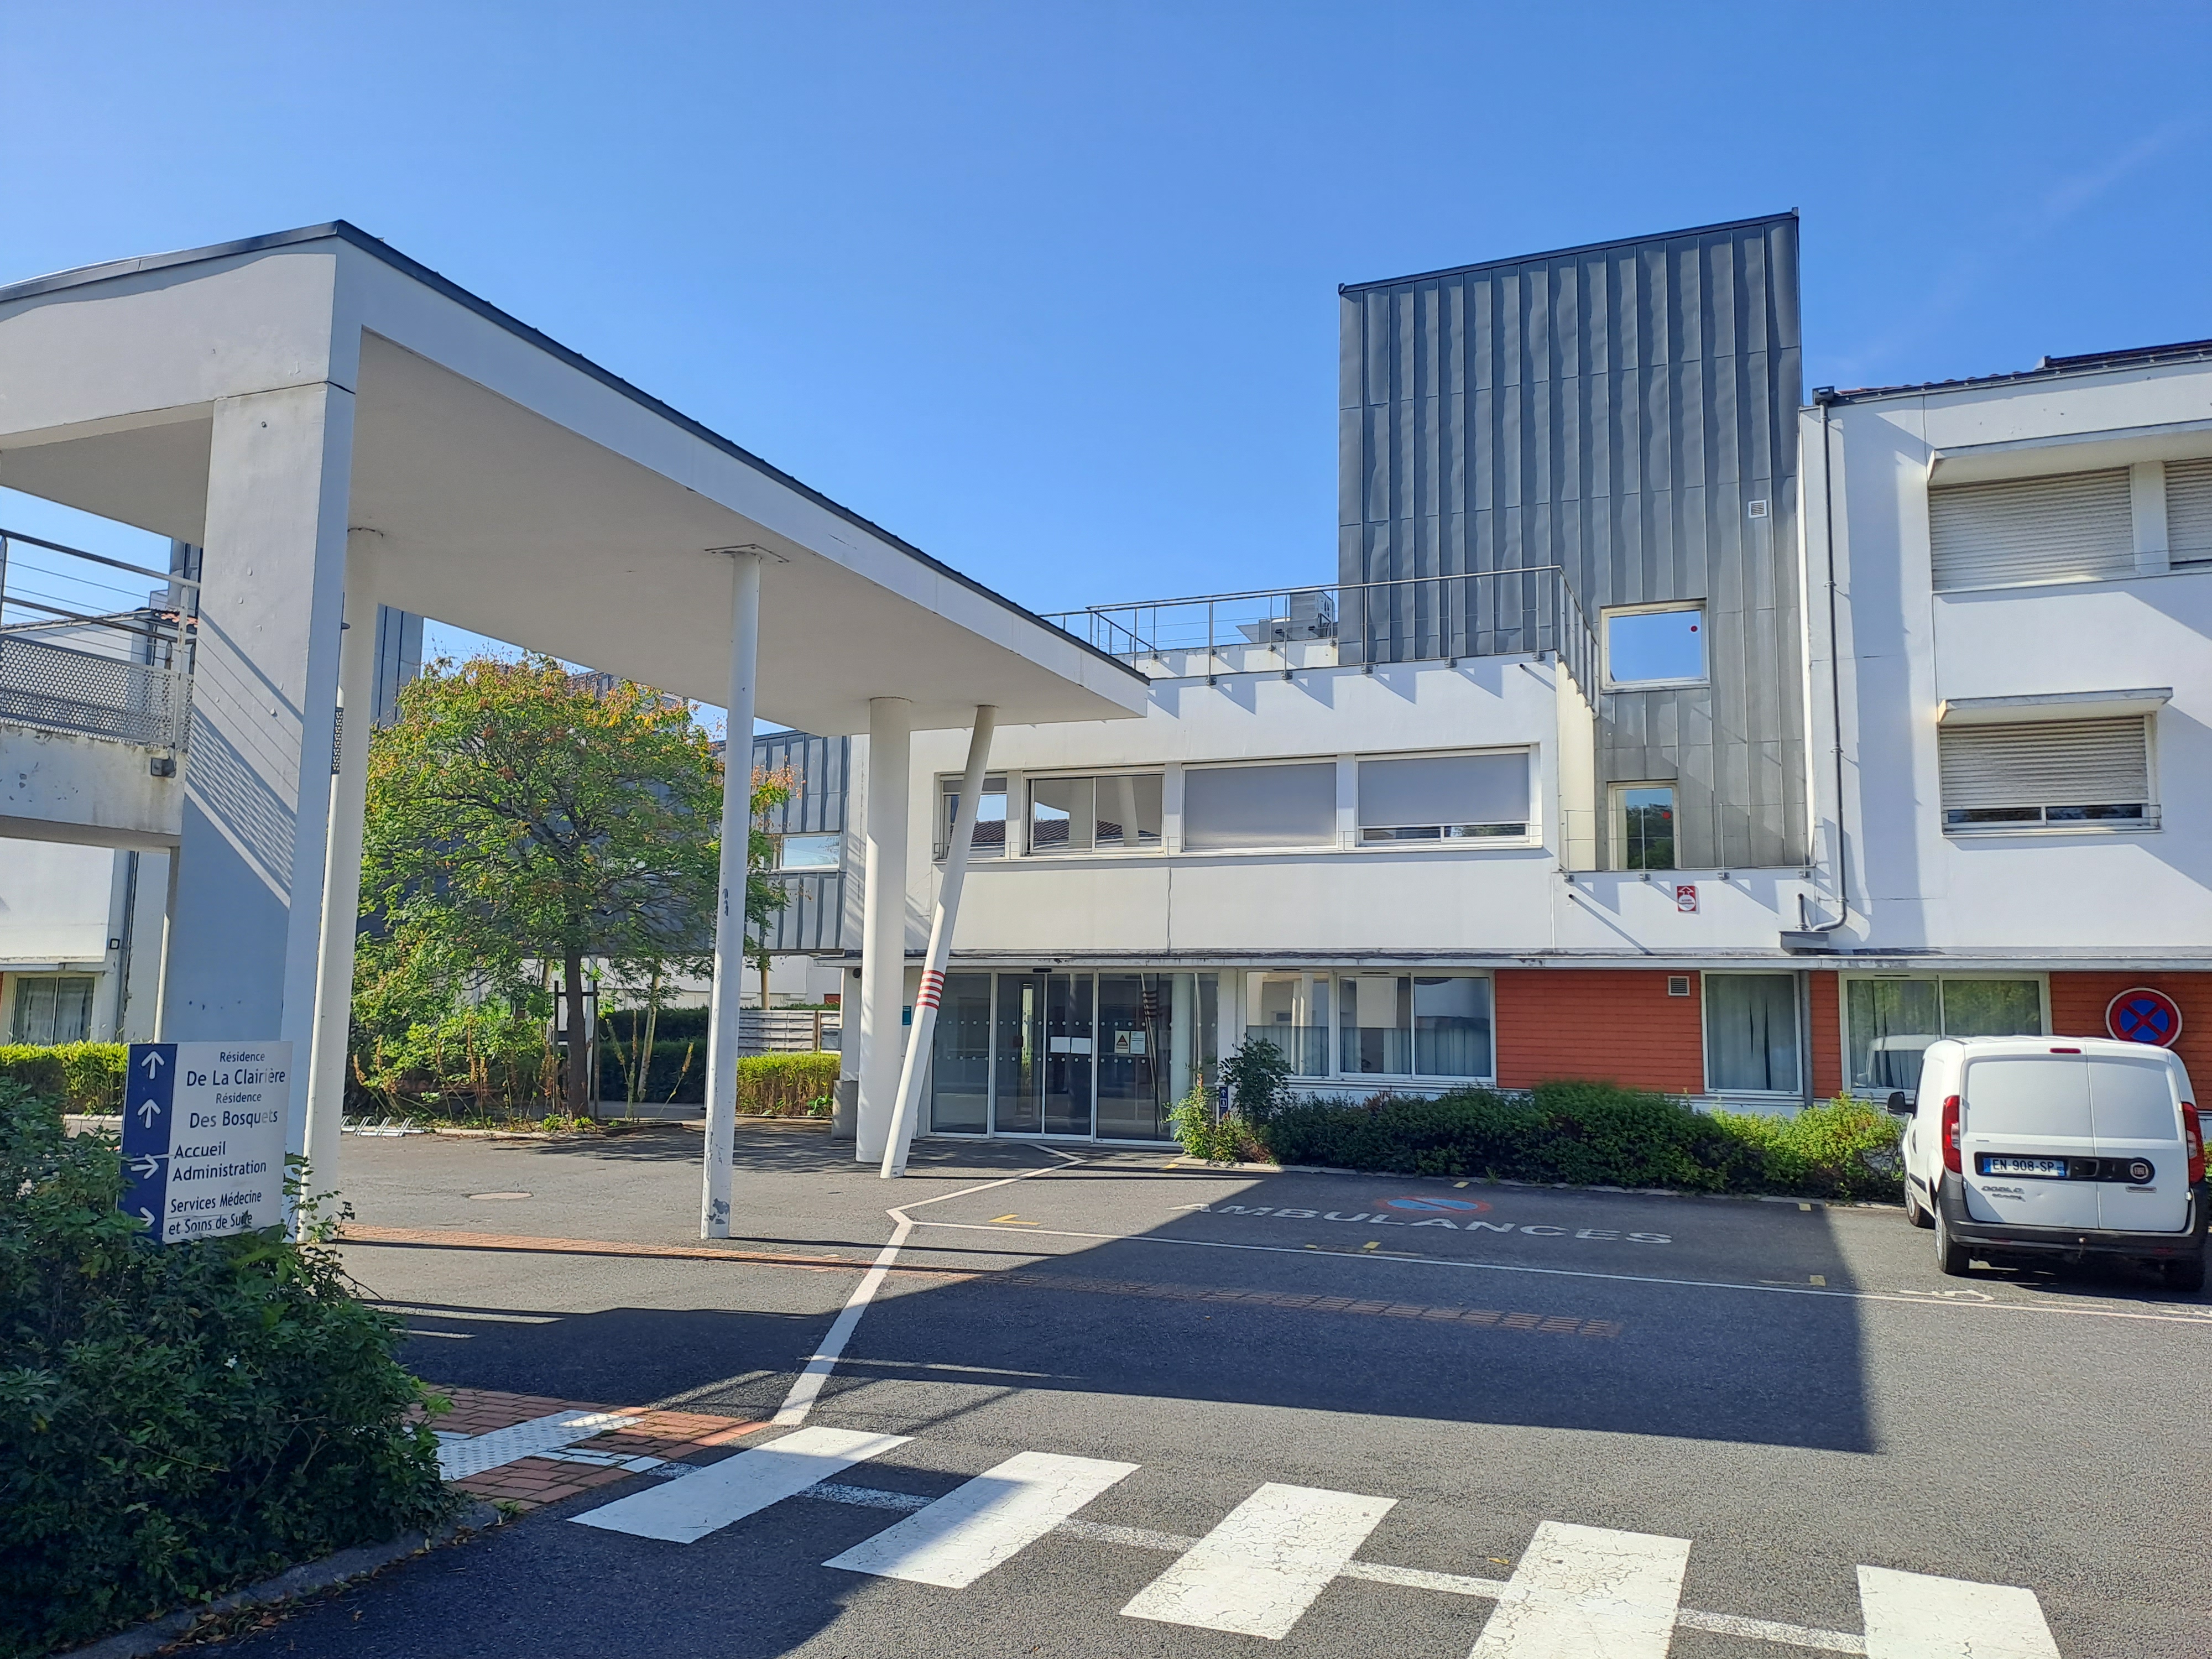 Photo #1 de de l'hôpital Sèvre-et-Loire